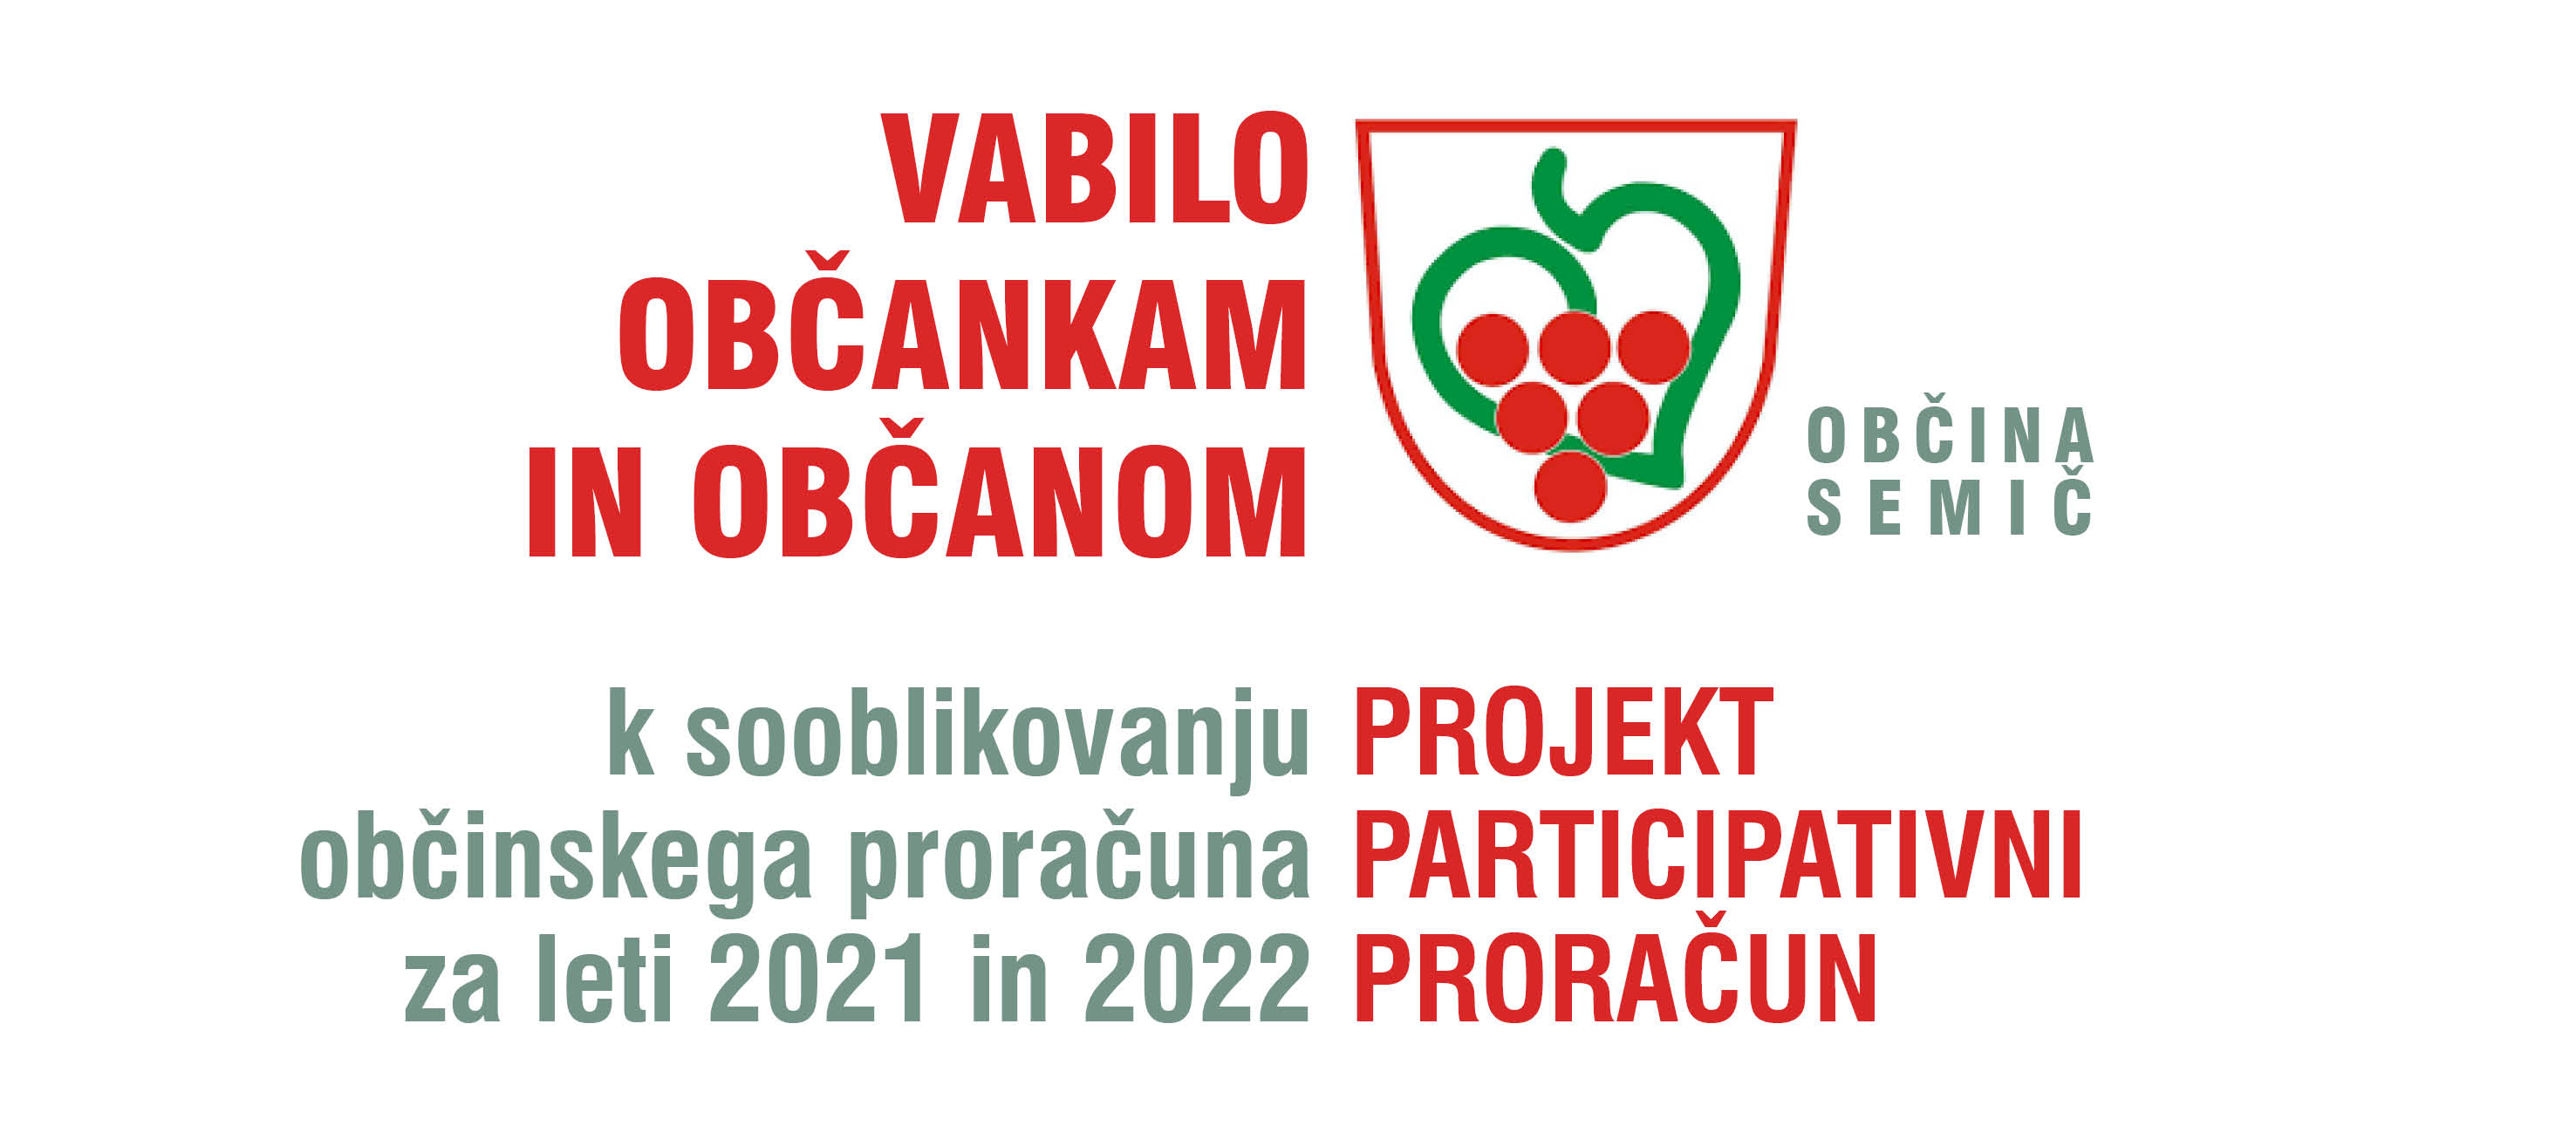 participativni_proracun_vabilo (1).jpg